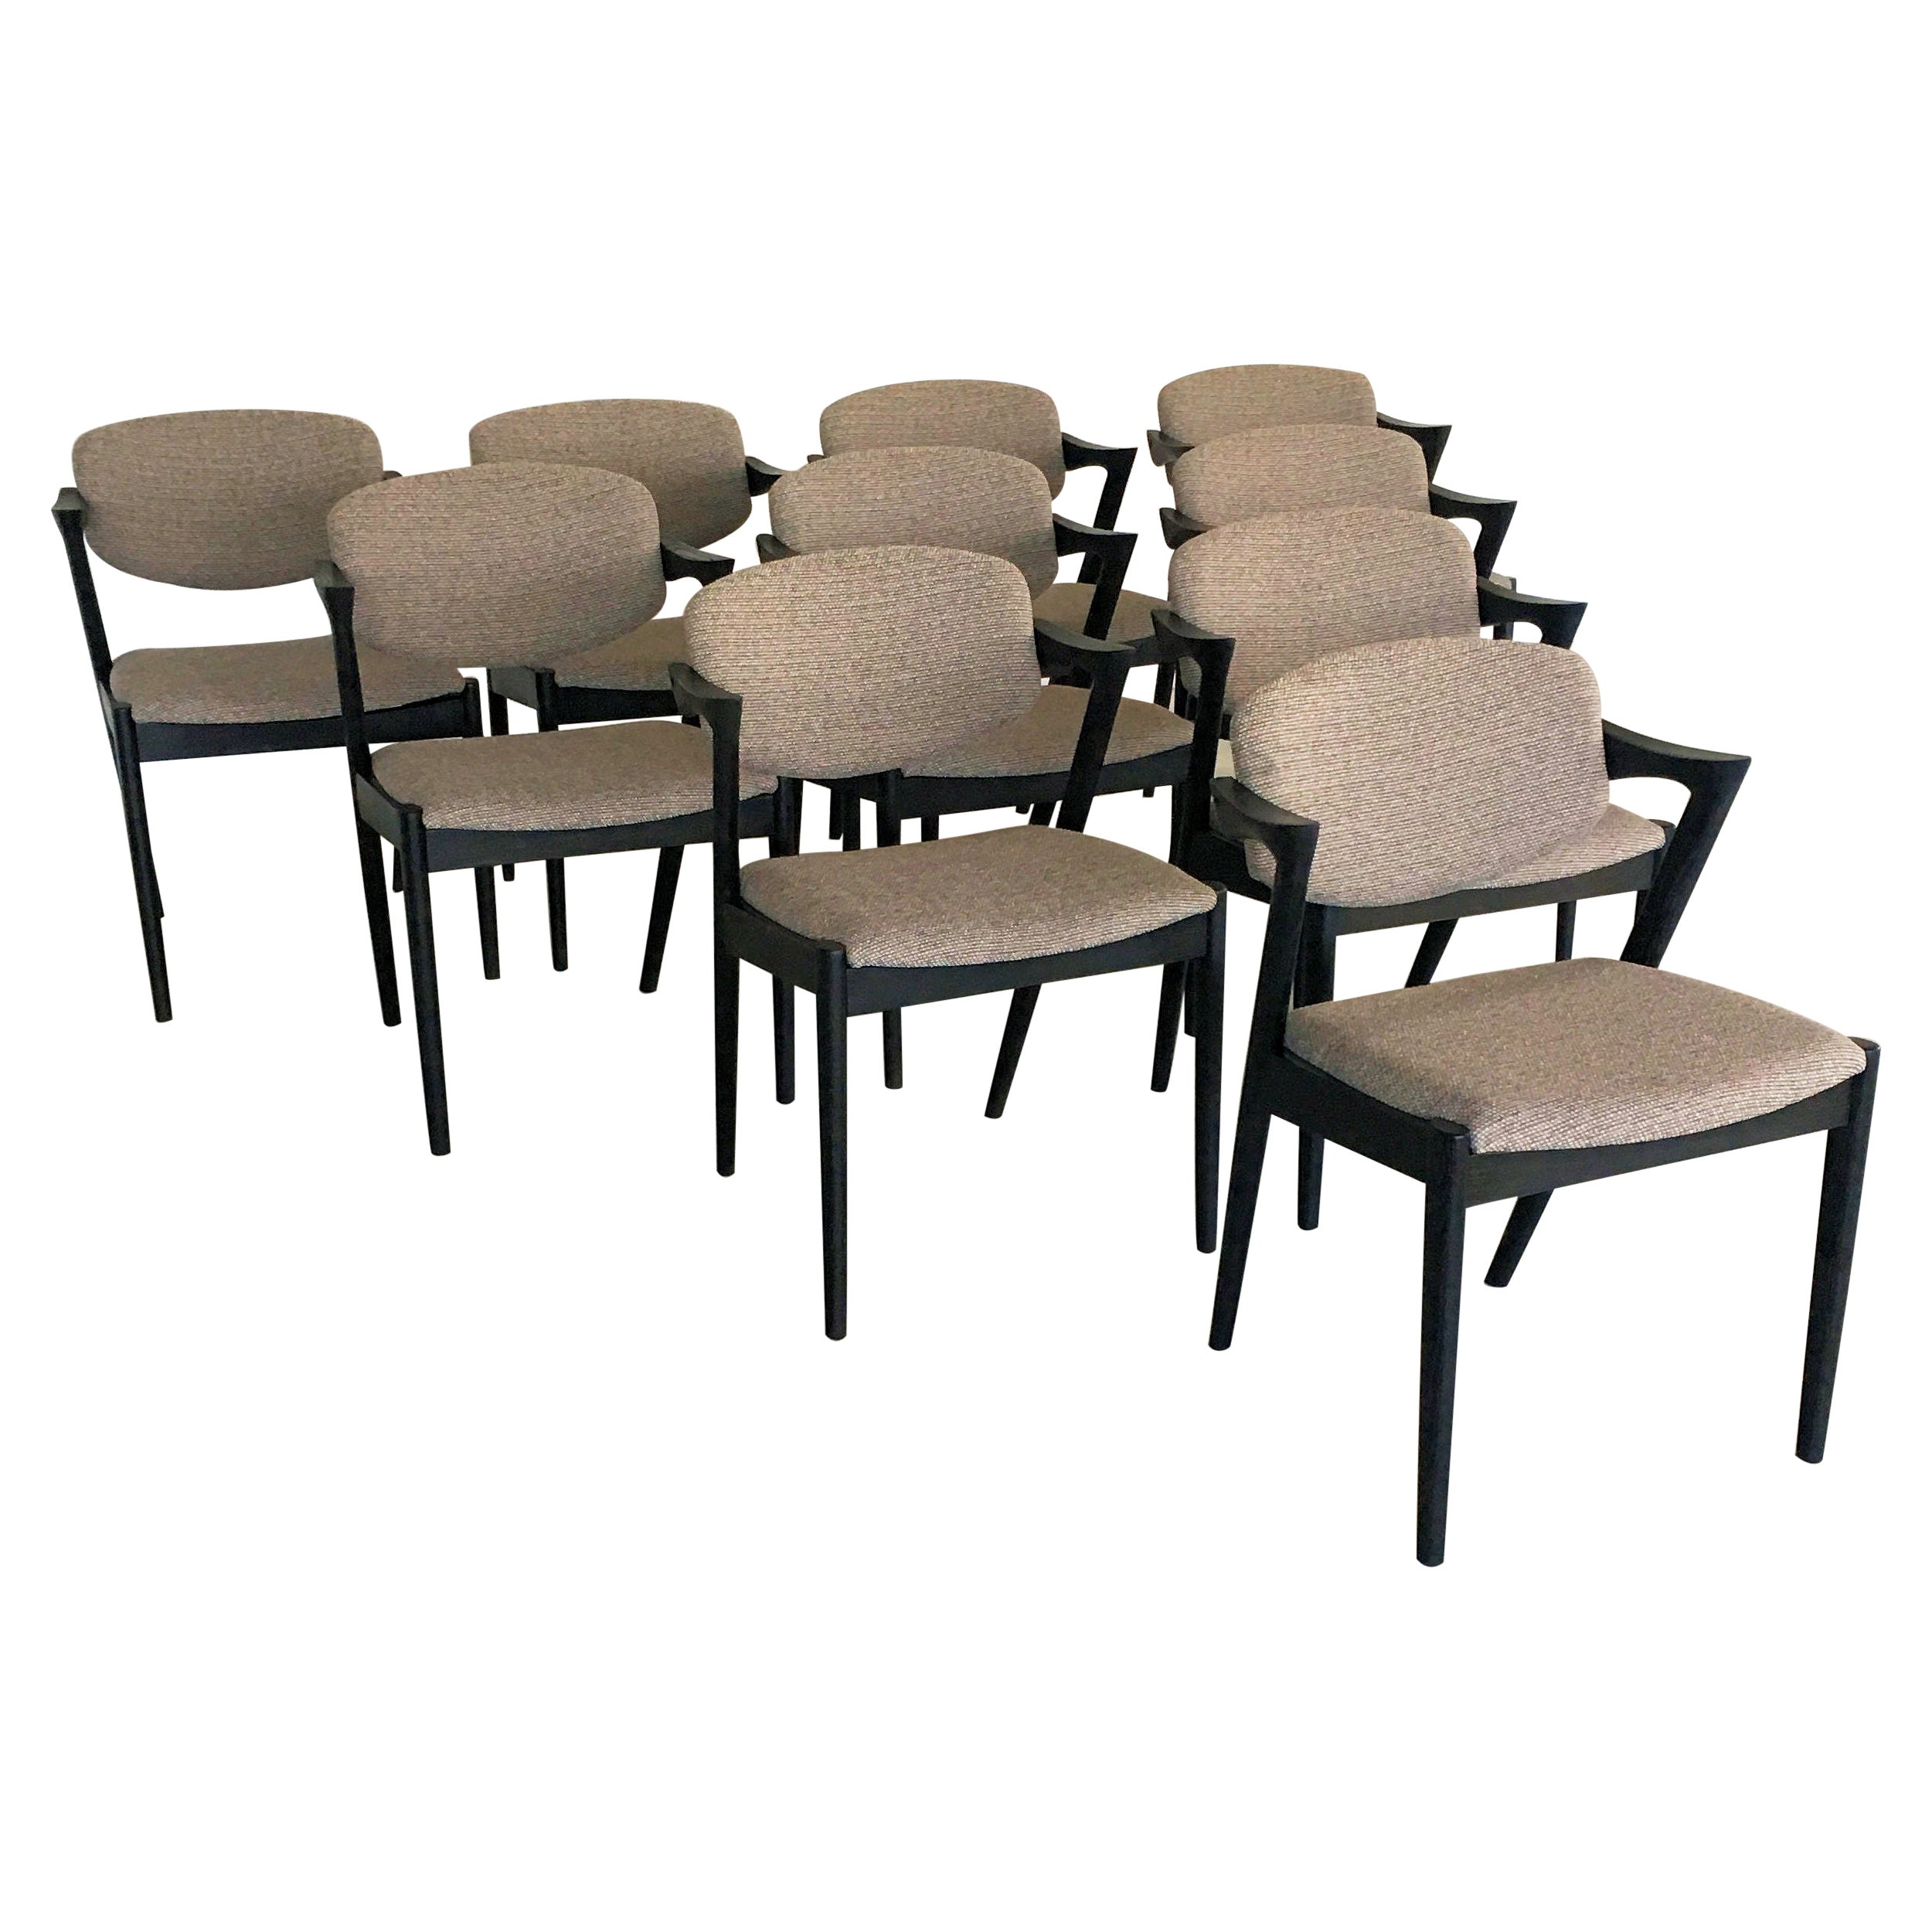 Six chaises de salle à manger Kai Kristiansen restaurées et ébénisées, tapissées sur mesure incluses